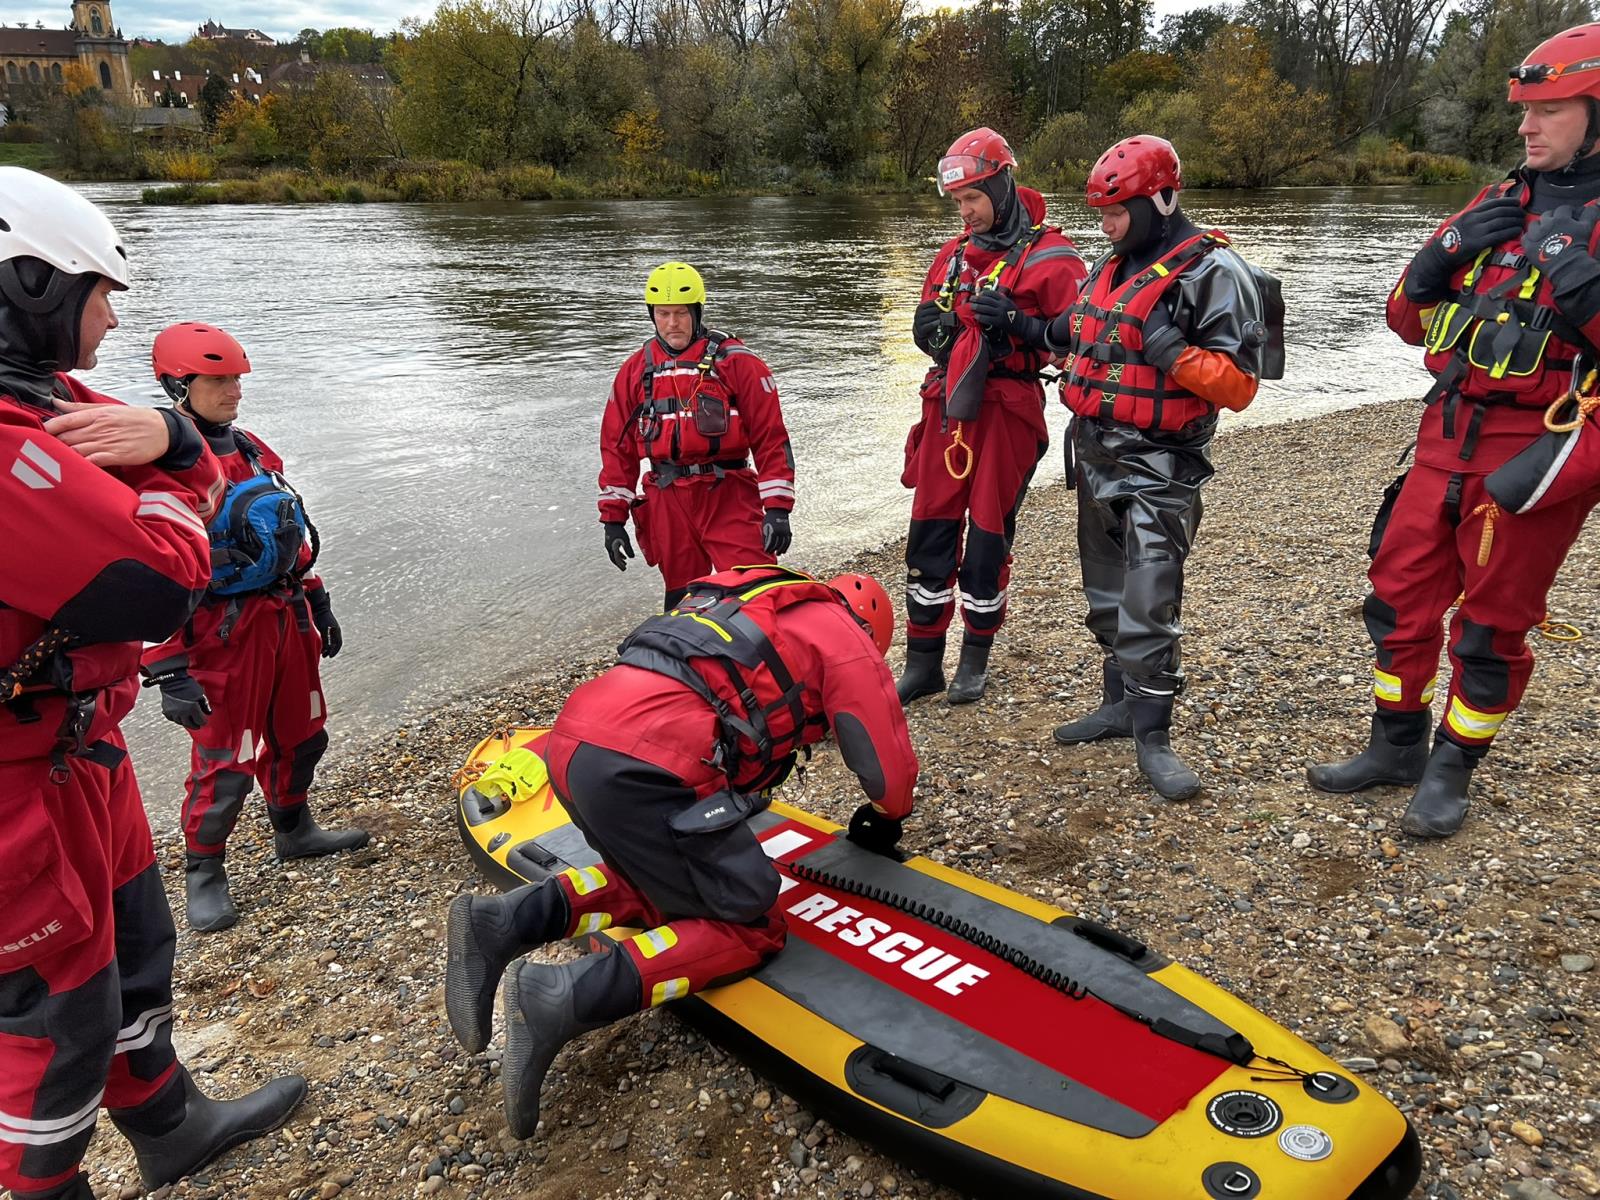 Výcvik v divoké vodě_účastníci si zkouší různé situace a techniky při záchraně na vodě